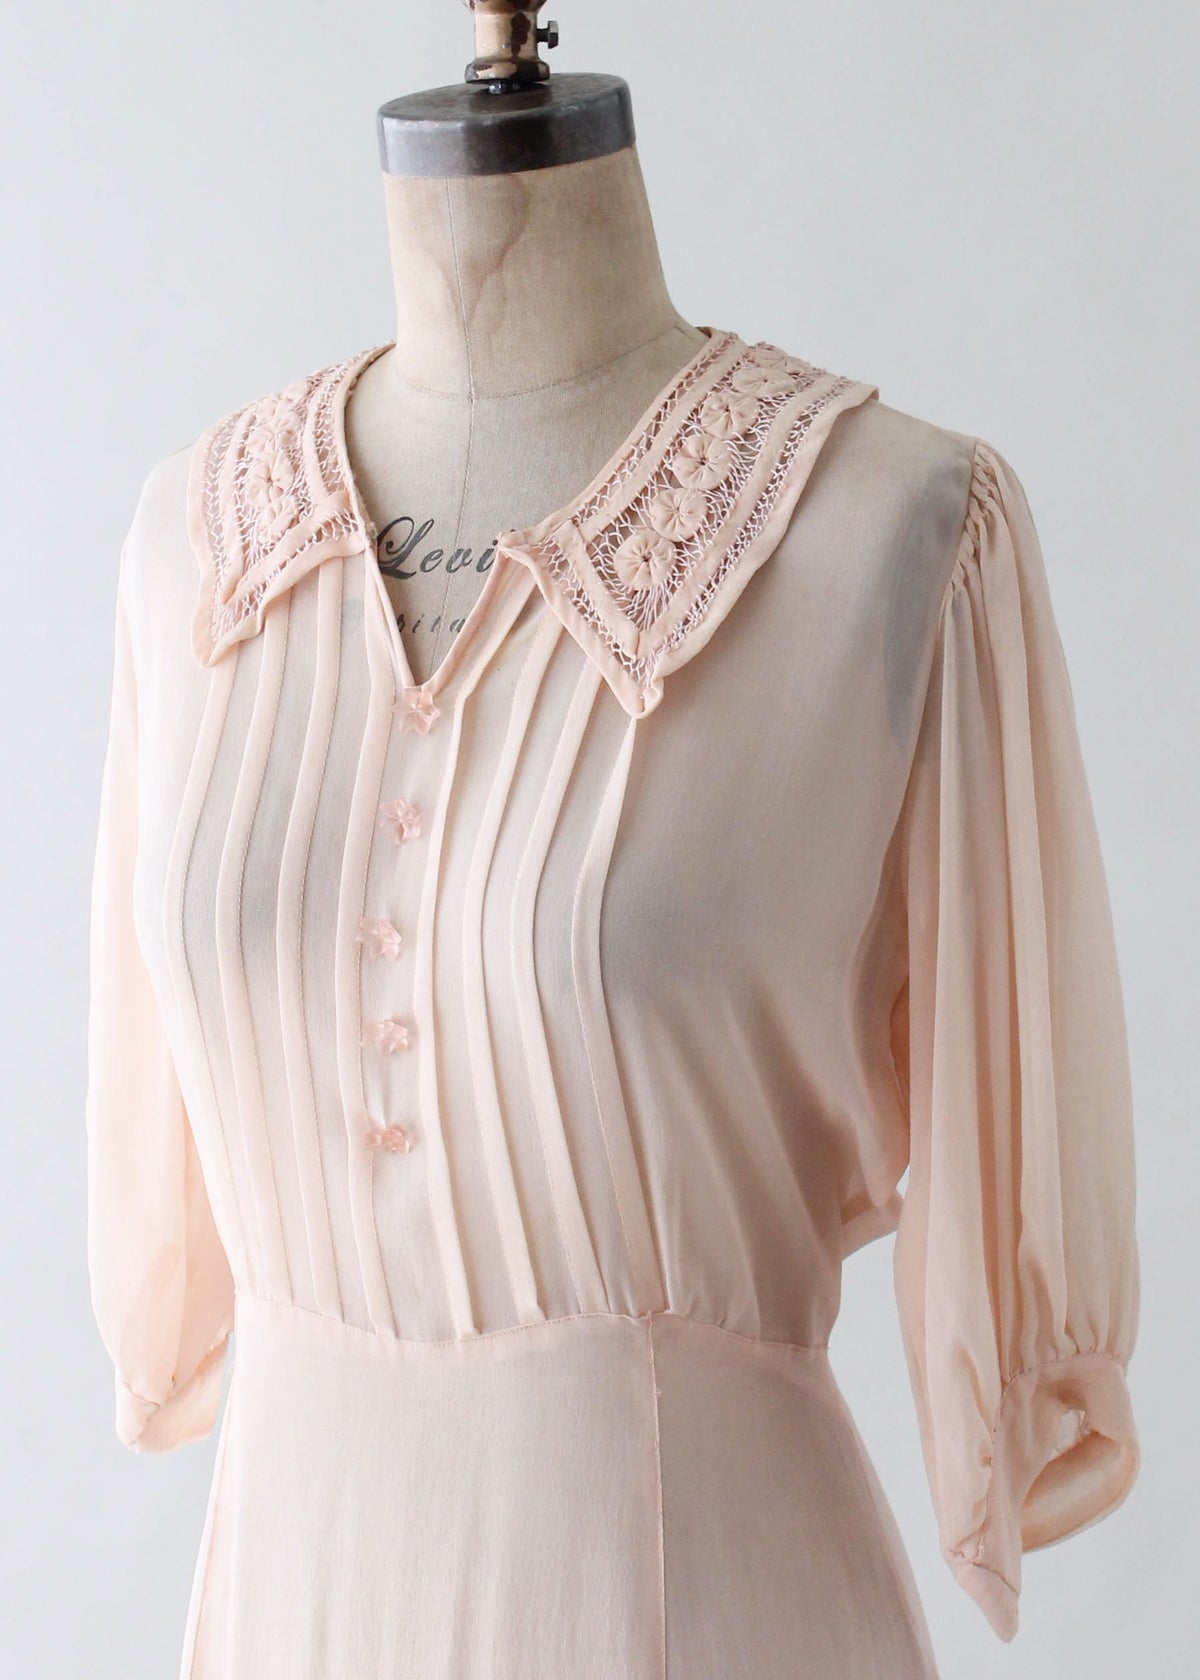 Vintage 1930s Peach Sheer Silk Crepe Day Dress - Raleigh Vintage